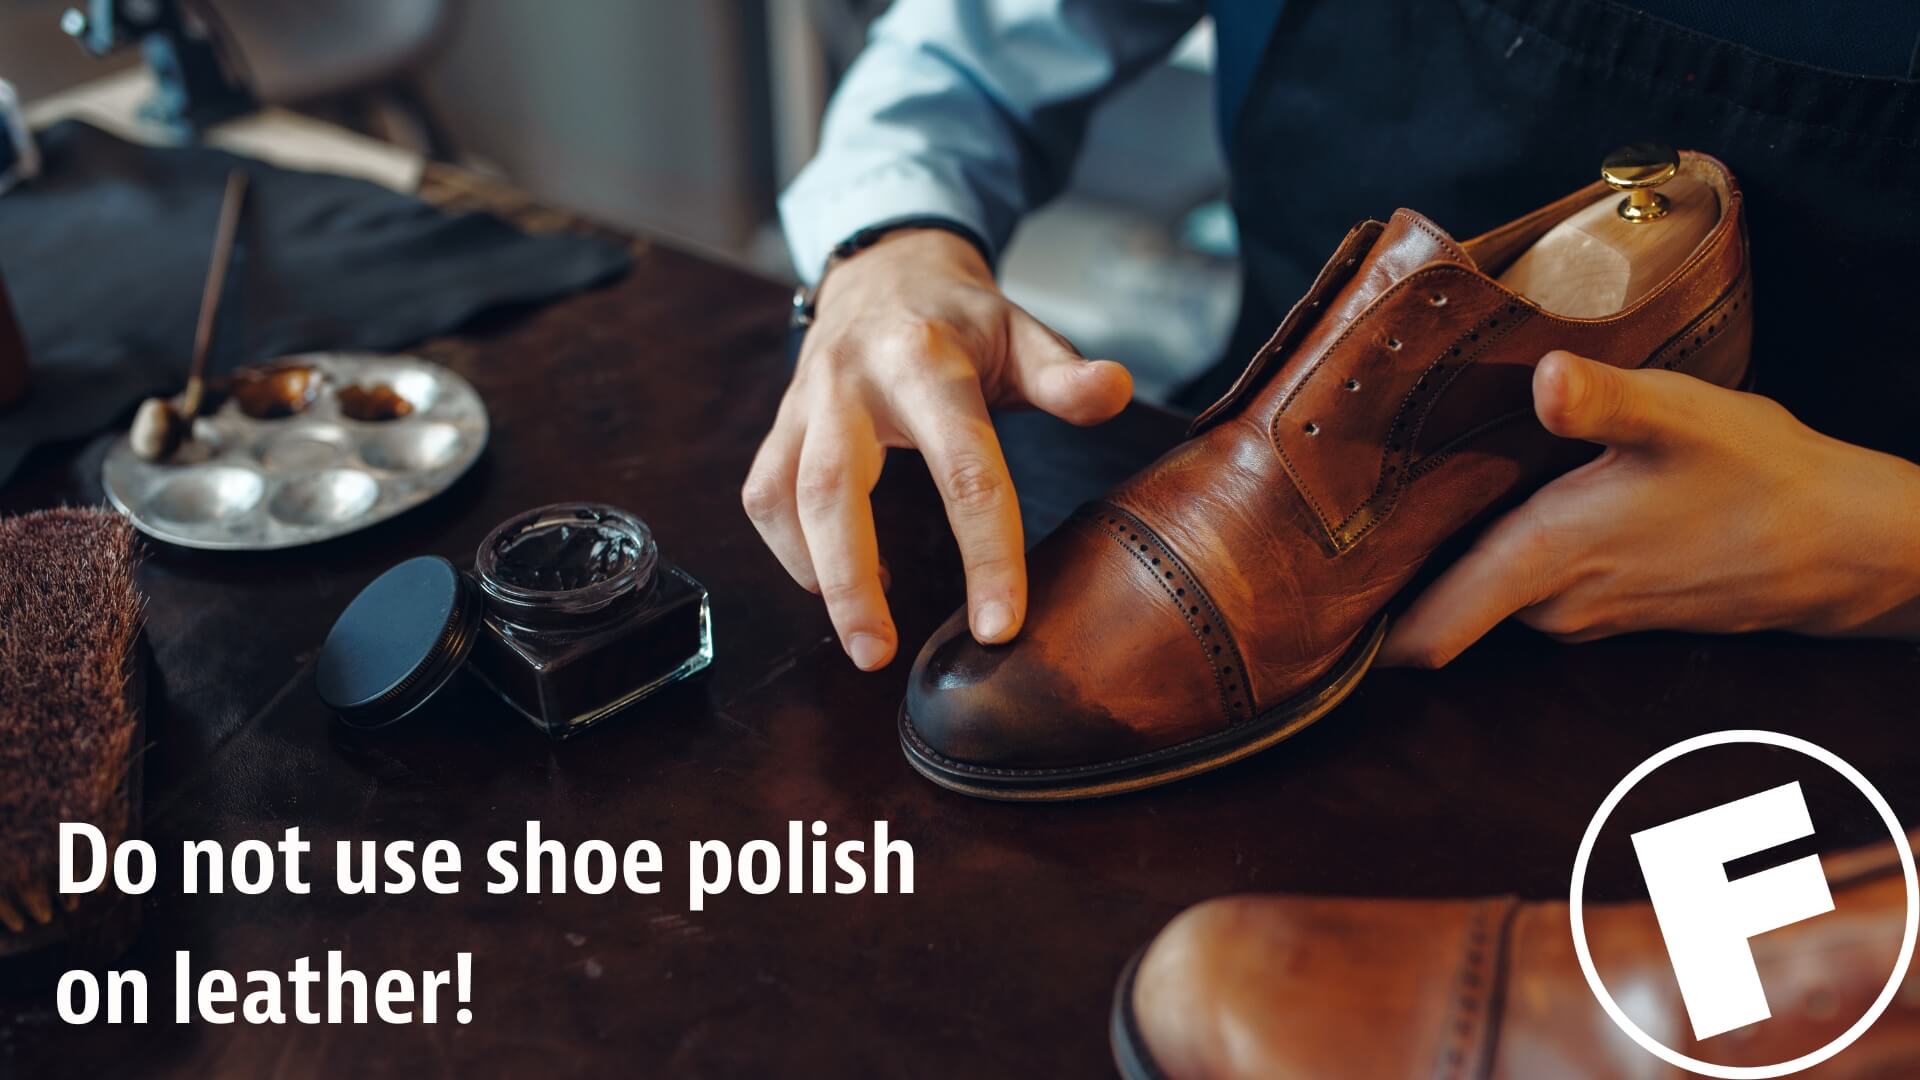 Do not use shoe polish on leather upholstery